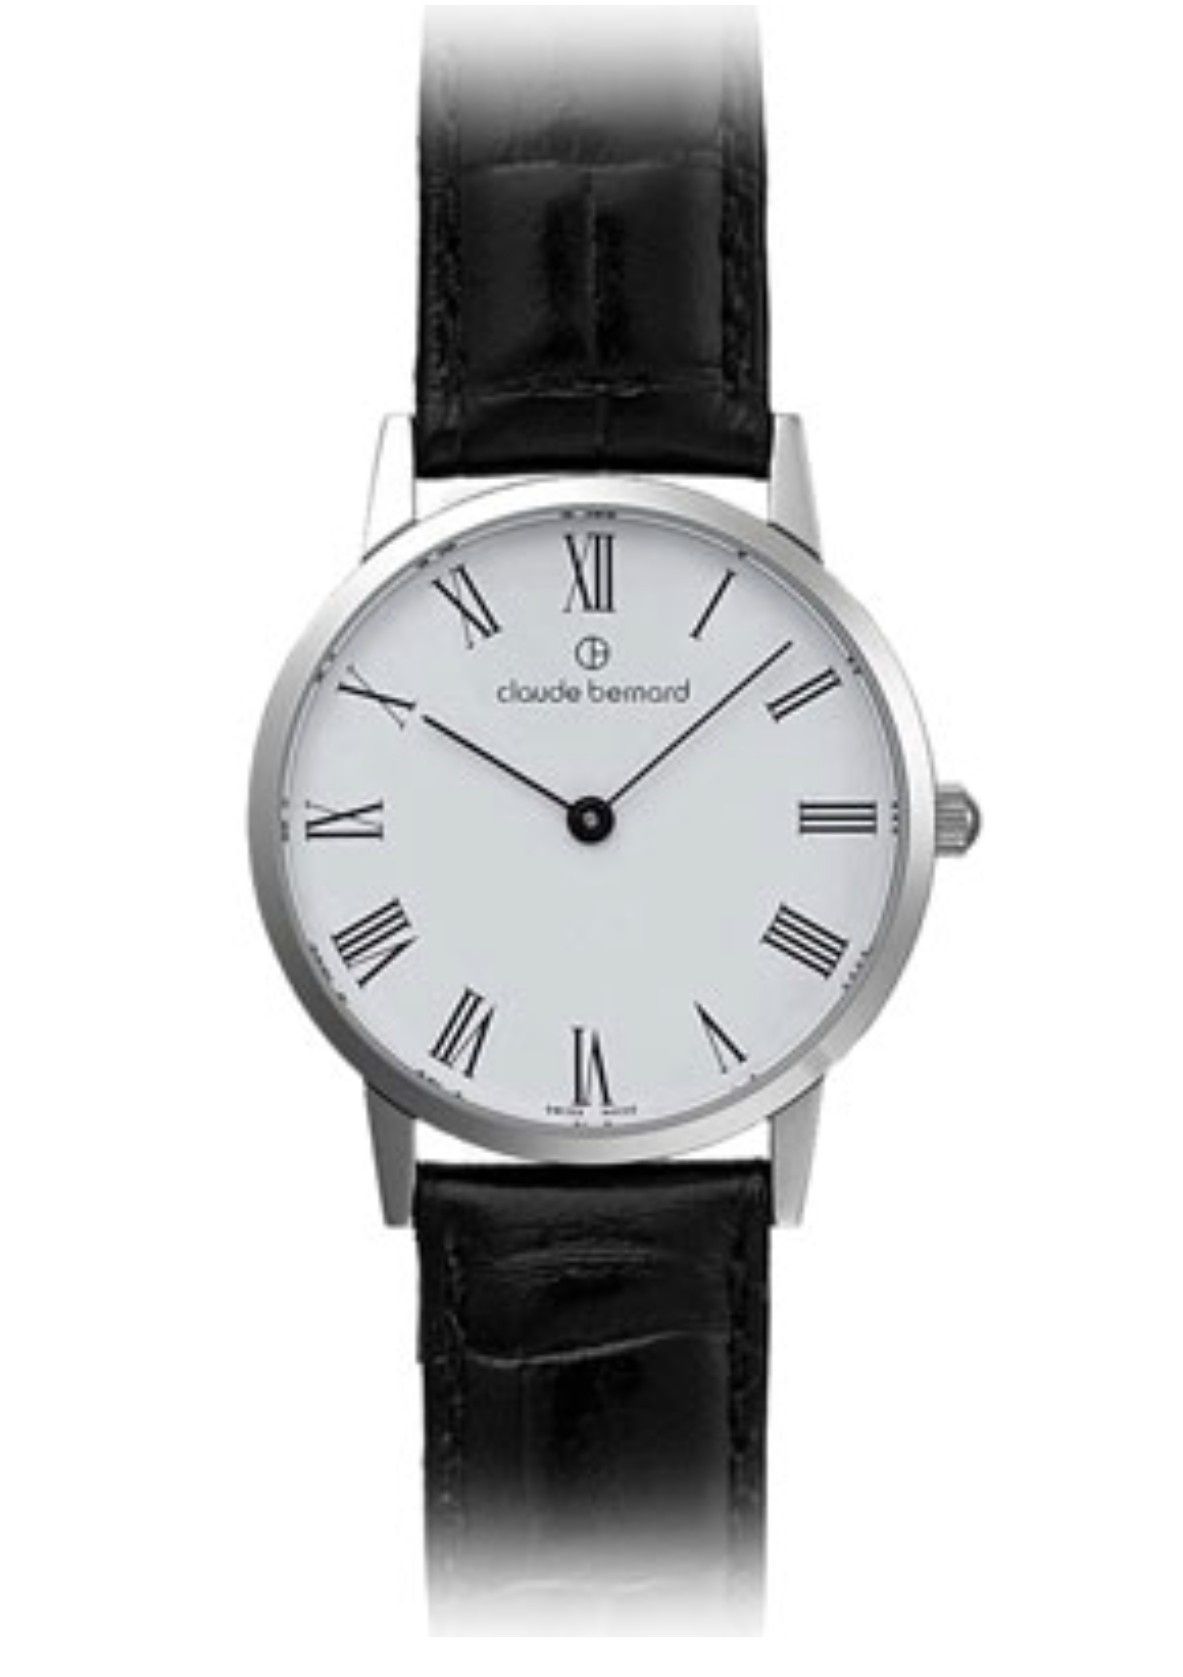 Продам годинник Claude bernard 20060-3-BR  оригінал